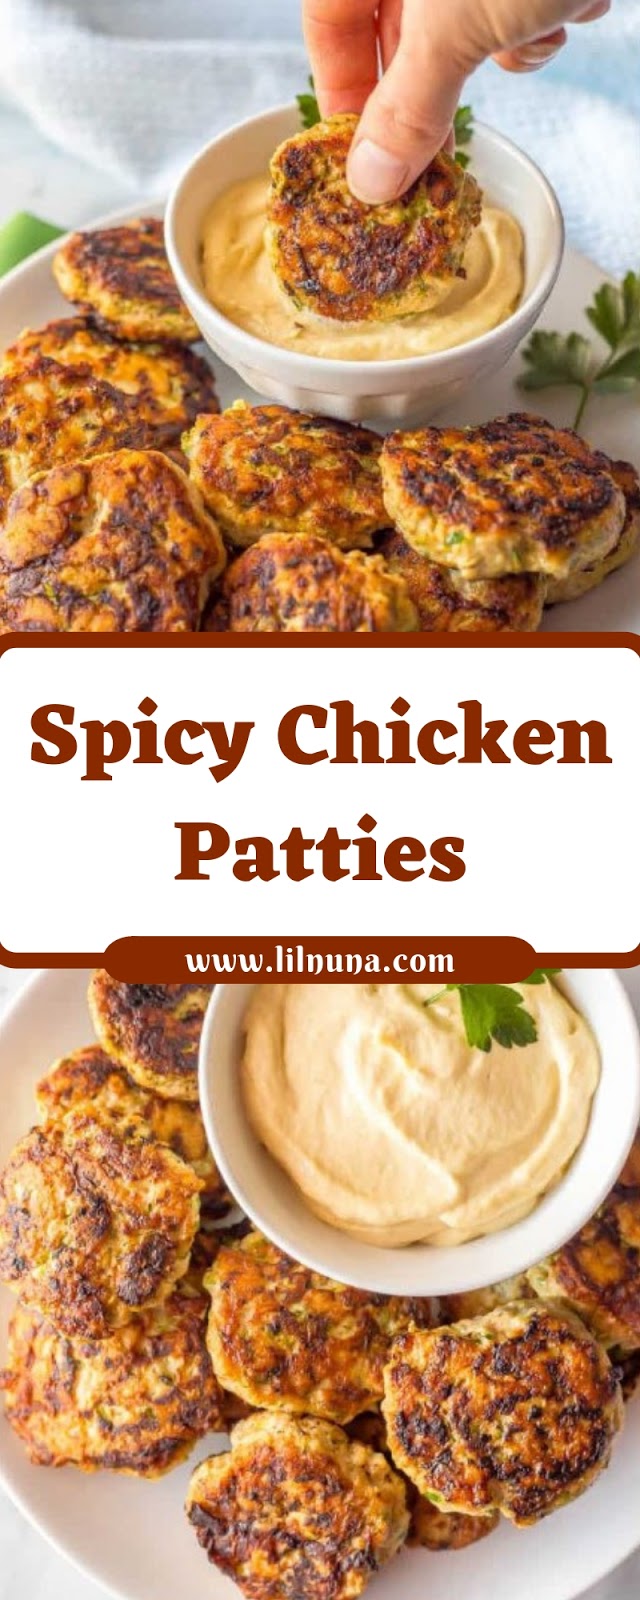 Spicy Chicken Patties